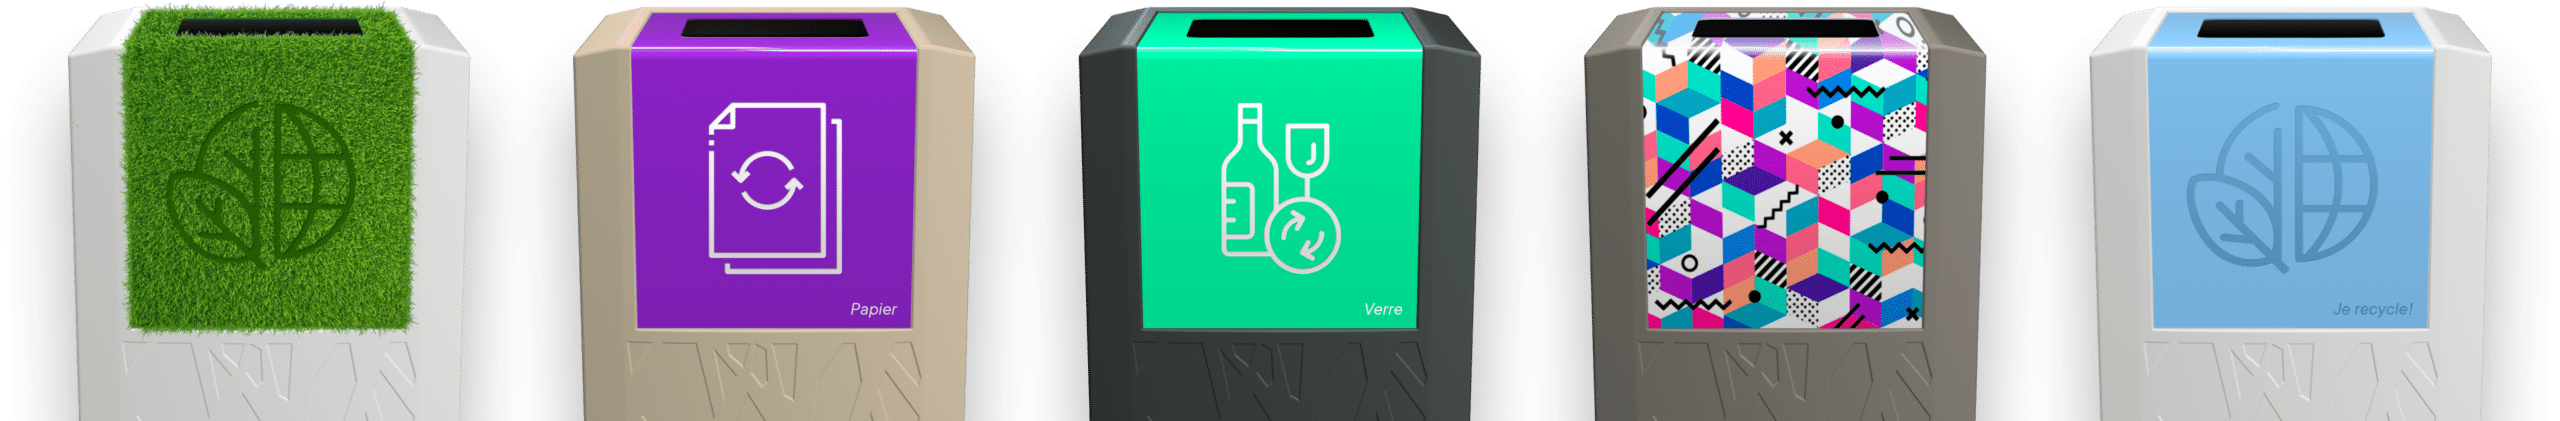 green-office-ihr-abfallmanagement-firmenumgebung-sakura